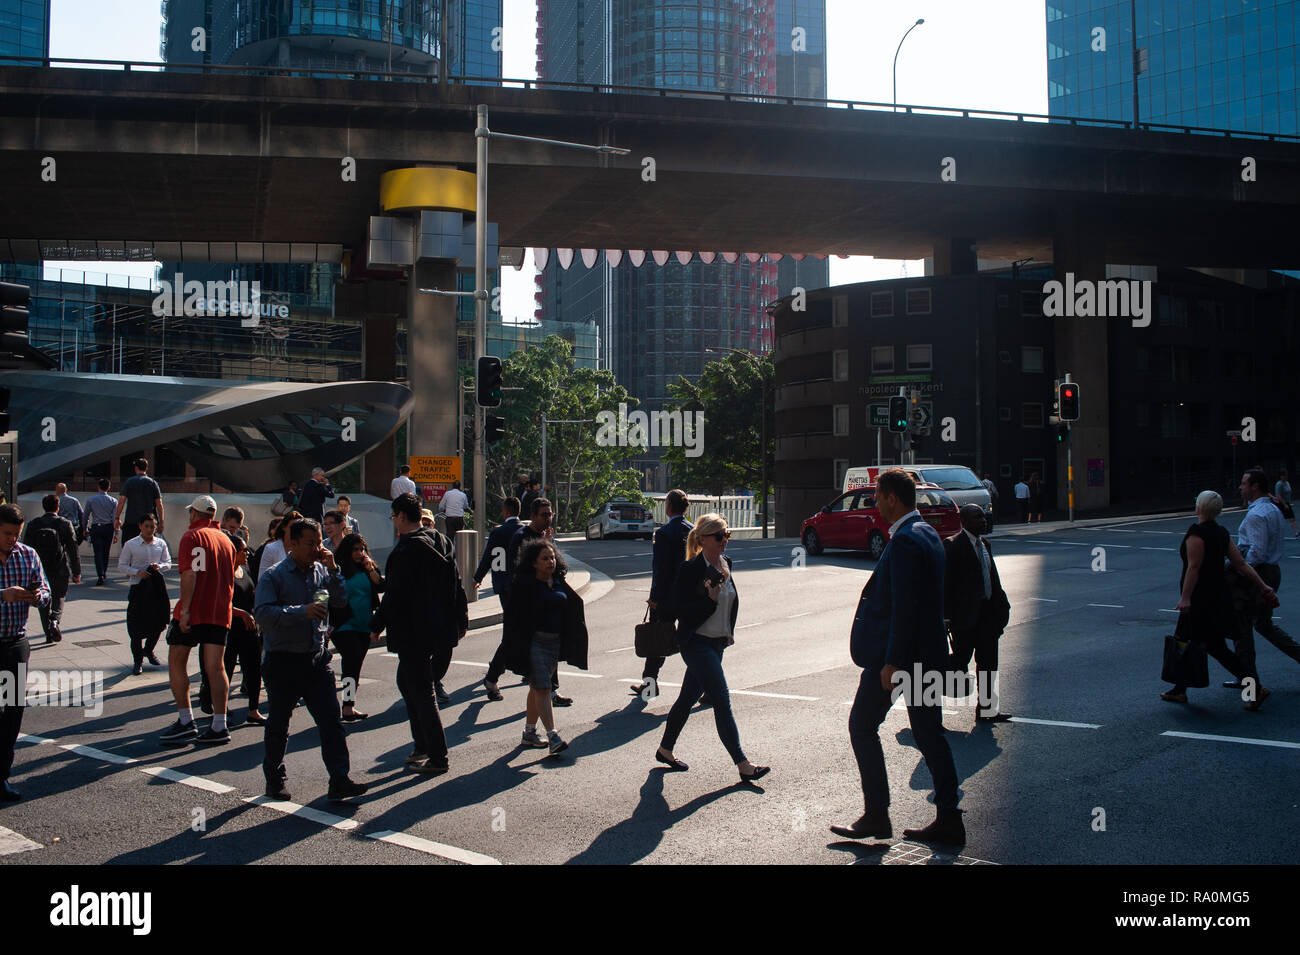 09.05.2018, Sydney, New South Wales, Australien - Menschen ueberqueren im Geschaeftsviertel von Sydney eine Strasse. 0SL180509D019CARO.JPG [MODEL RELE Stock Photo